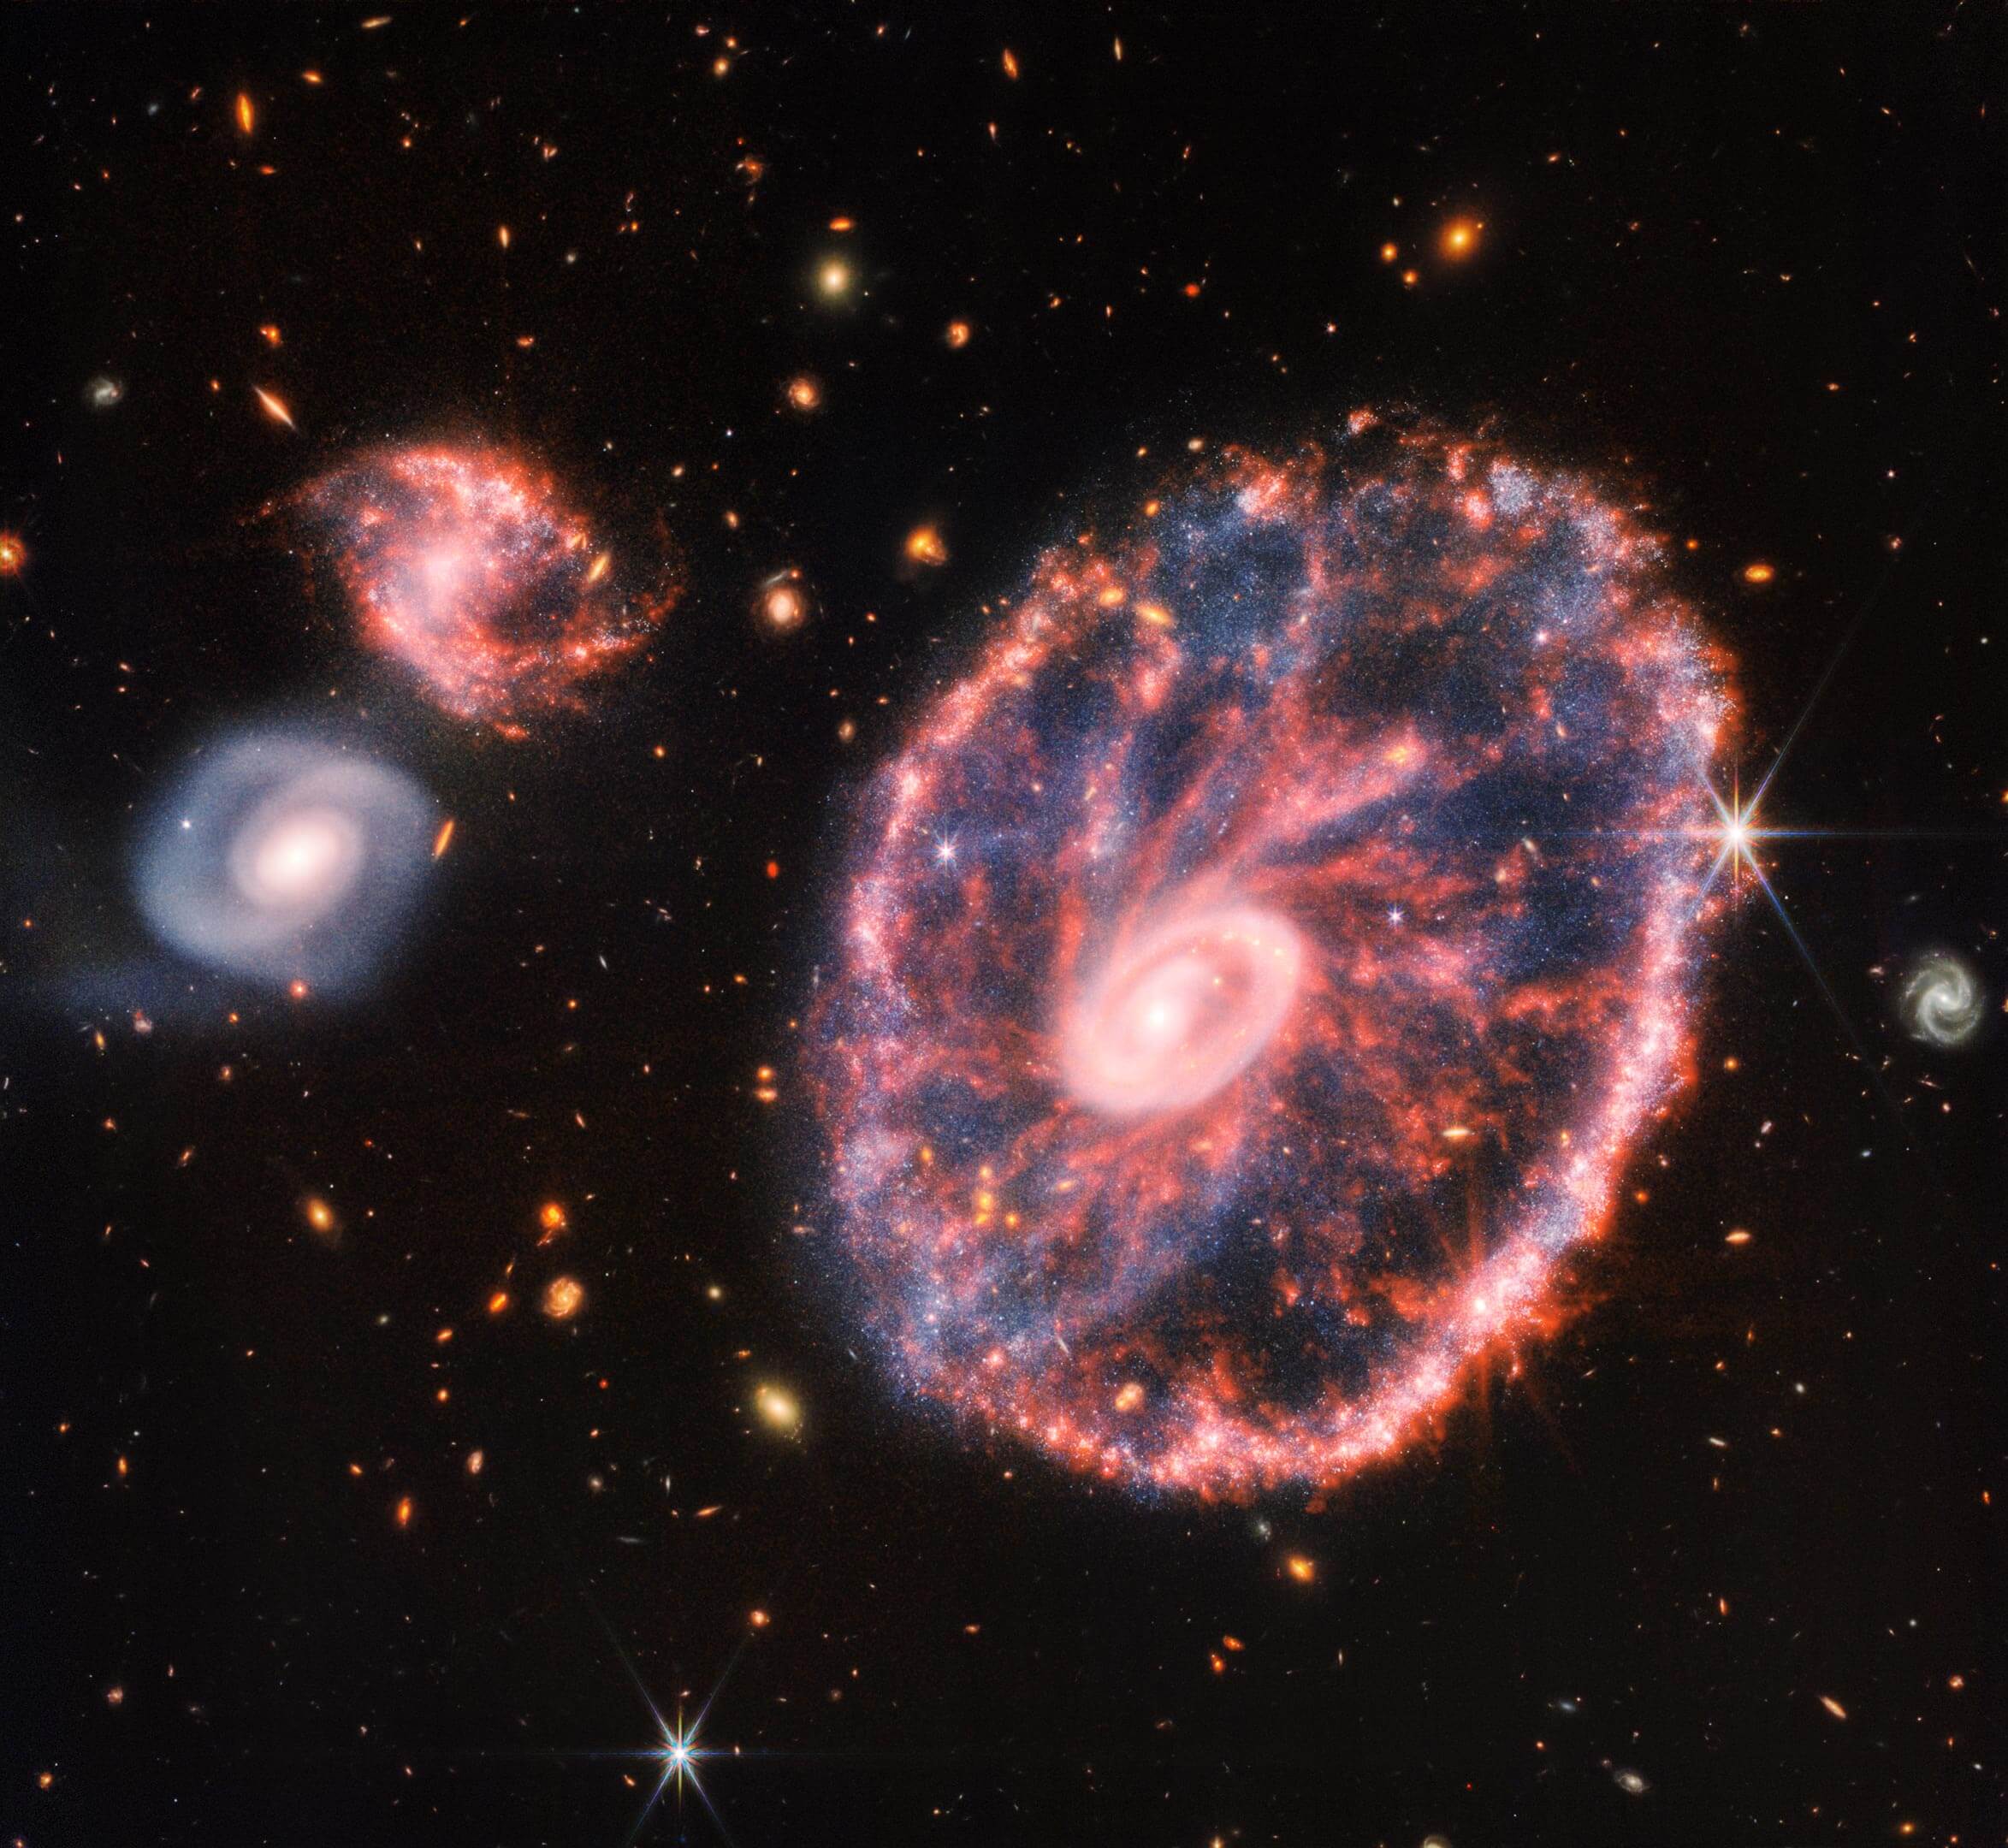 גלקסיה ורודה גדולה מנוקדת הדומה לגלגל עם אליפסה פנימית קטנה, עם כחול מעורפל בתווך מימין, עם שתי גלקסיות ספירליות קטנות יותר בערך באותו גודל משמאל על רקע שחור. תמונה זאת של גלקסיית הגלגל והגלקסיות הנלוות שלה היא הרכבה ממצלמת האינפרה אדום הקרוב וממכשיר האינפרה אדום הבינוני של ווב, שחושפת פרטים שקשה לראות מהתמונות הנפרדות לבדן. קרדיט: NASA, ESA, CSA, STScI